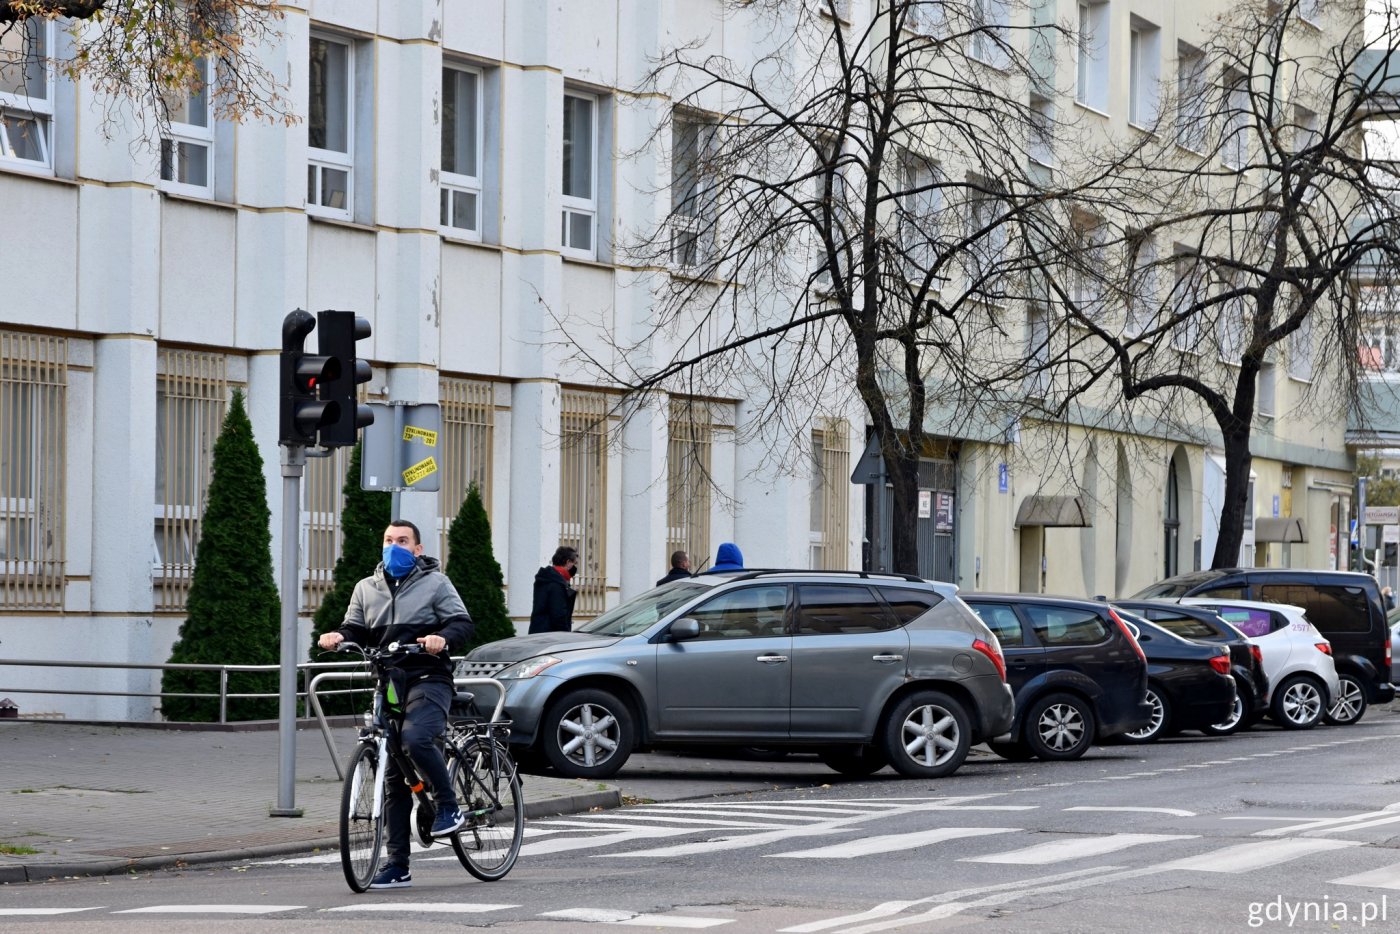 Rowerzysta w Gdyni stojący za przejściem dla pieszych na czerwonym świetle, zanim widać zaparkowane samochody . Fot. Paweł Kukla